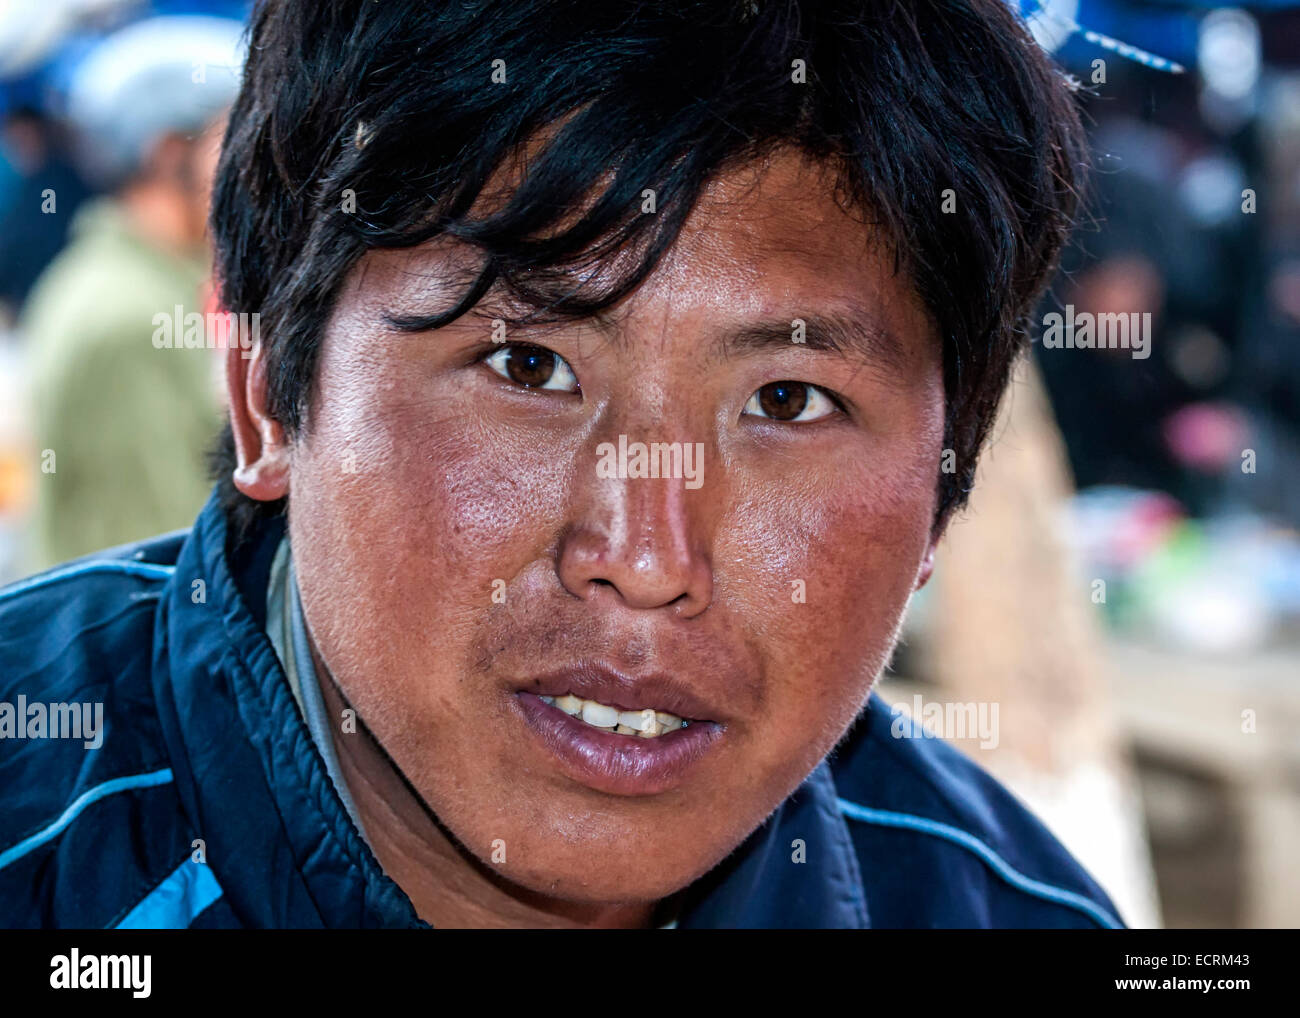 Closeup of a young Hmong man. Stock Photo